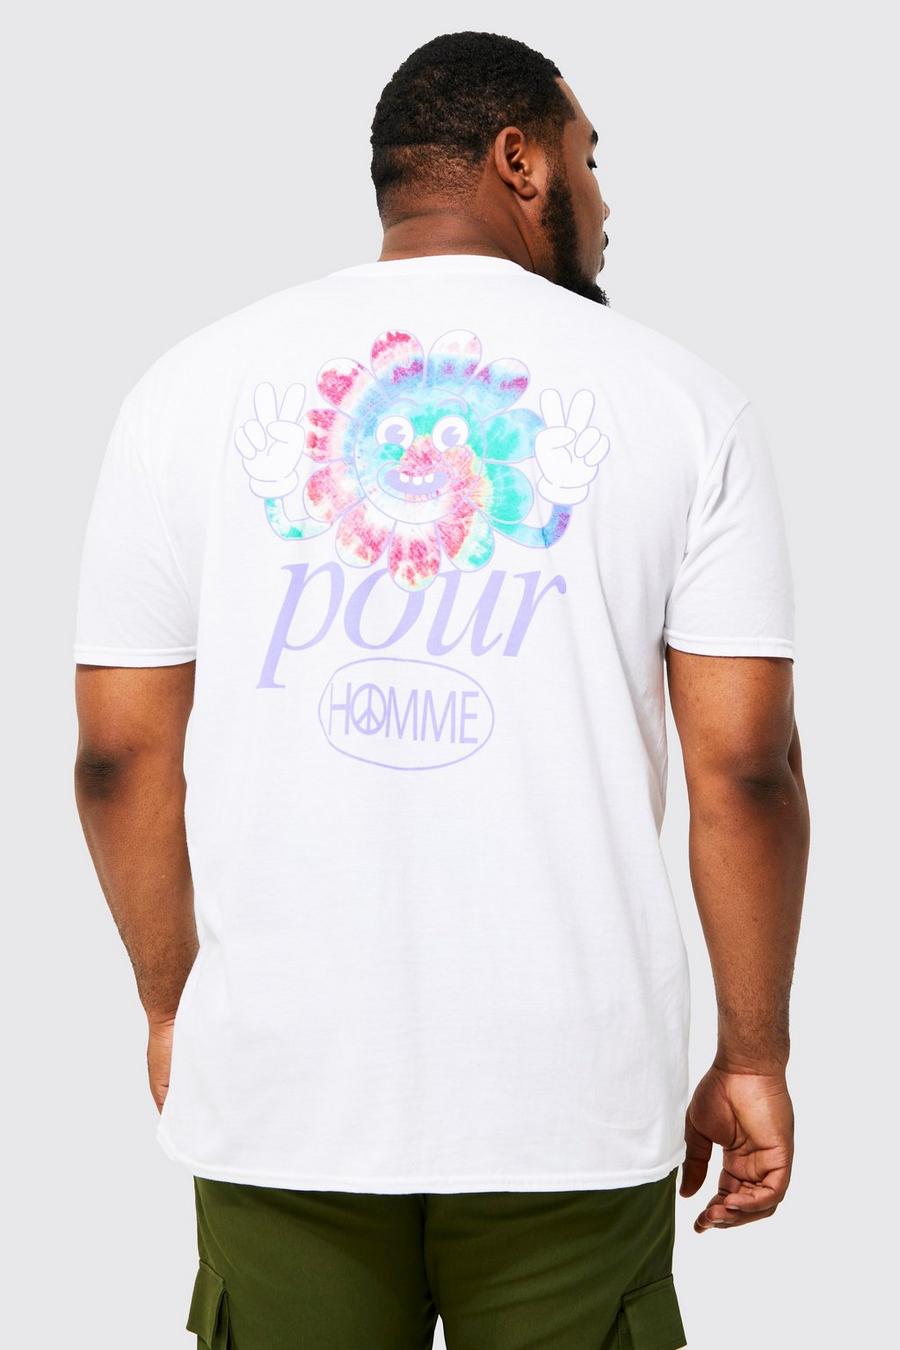 T-shirt Plus Size in fantasia tie dye con stampa di Smiley e fiori, White blanco